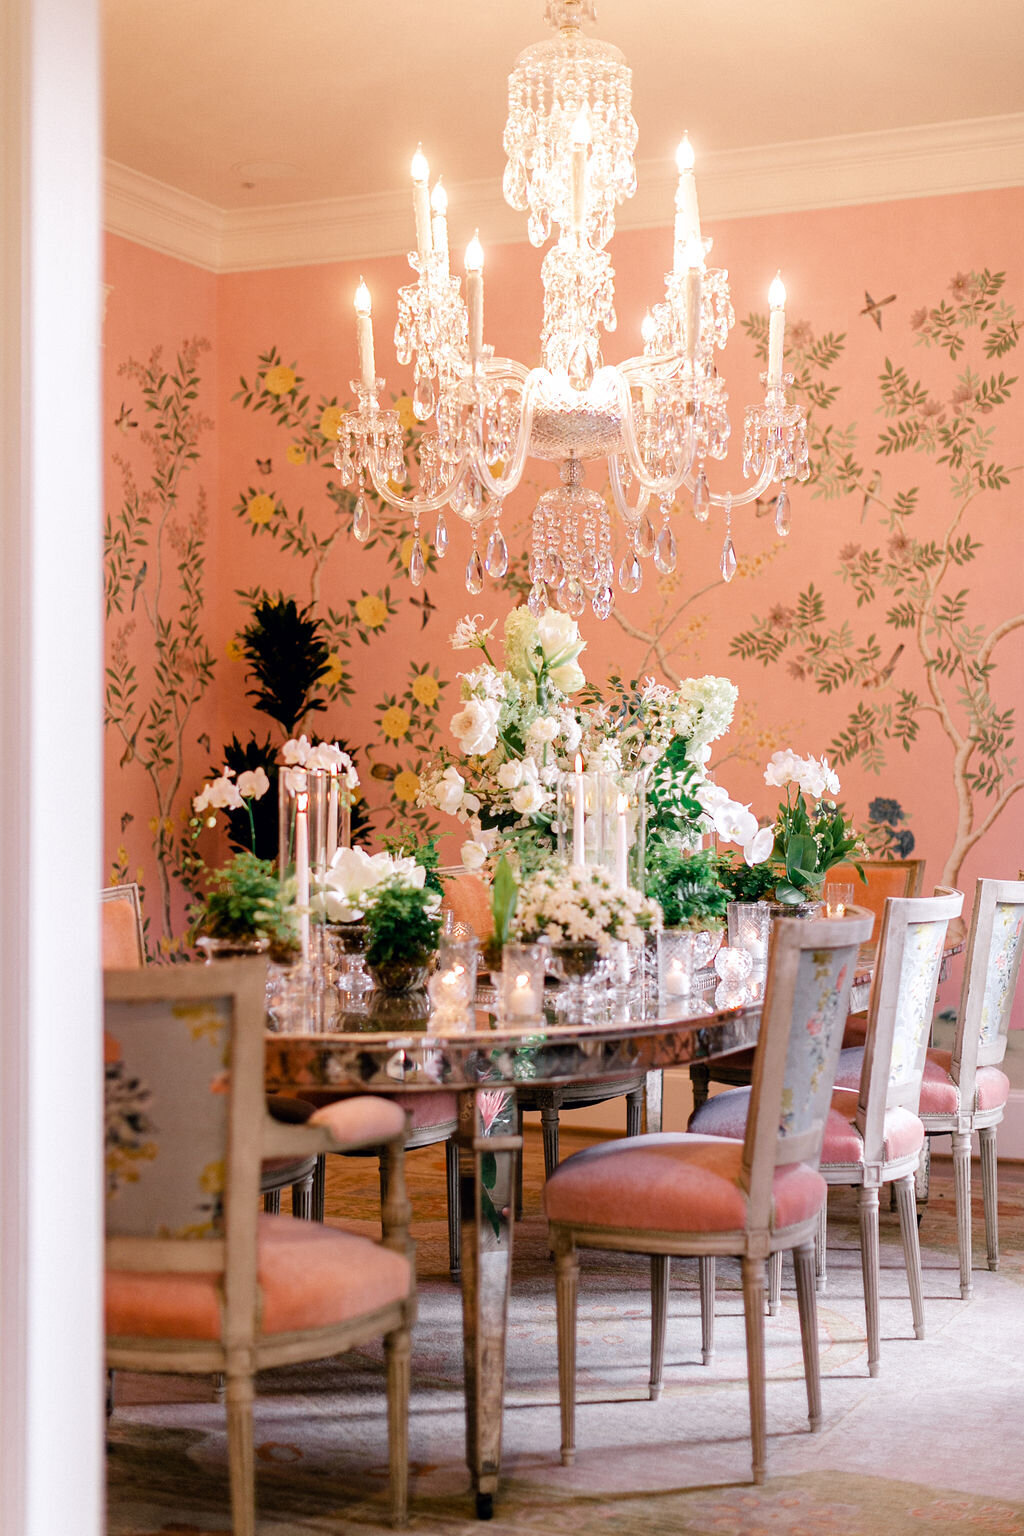 max-owens-design-at-home-floral-arrangements-04-engagement-party